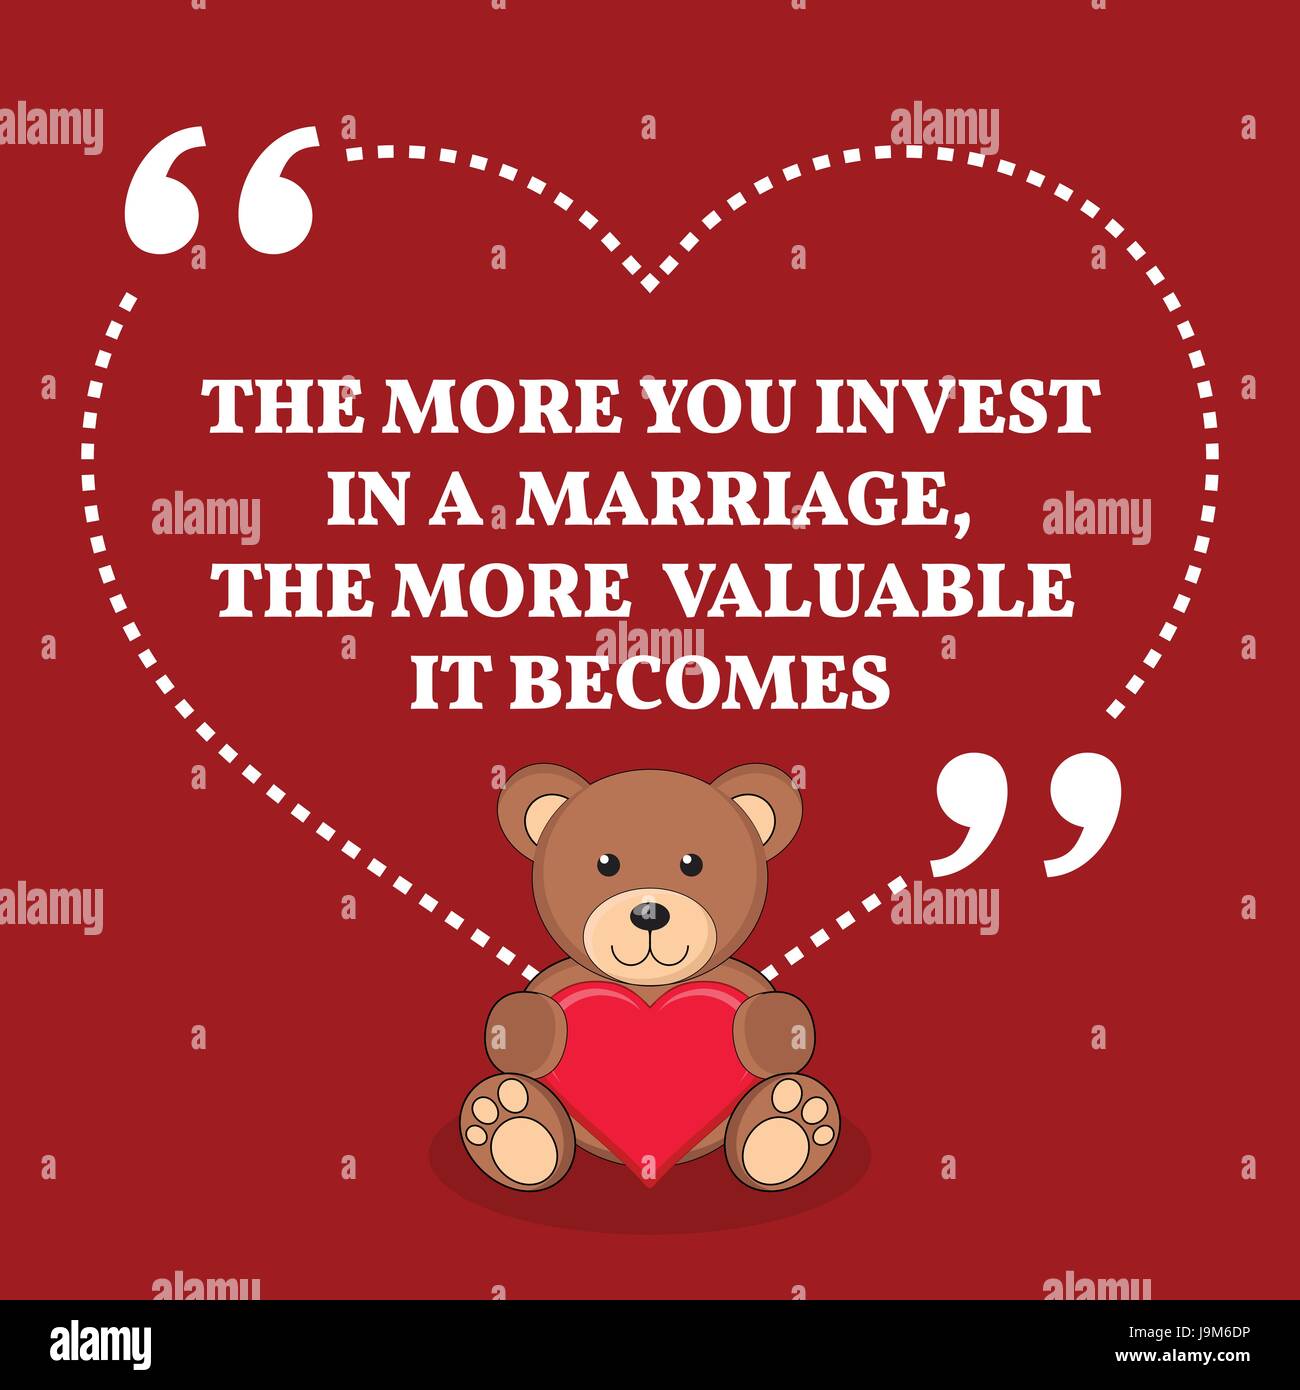 Di ispirazione amore il matrimonio preventivo. Il più che investire in un matrimonio, il più prezioso diventa. Semplice design alla moda. Illustrazione Vettoriale